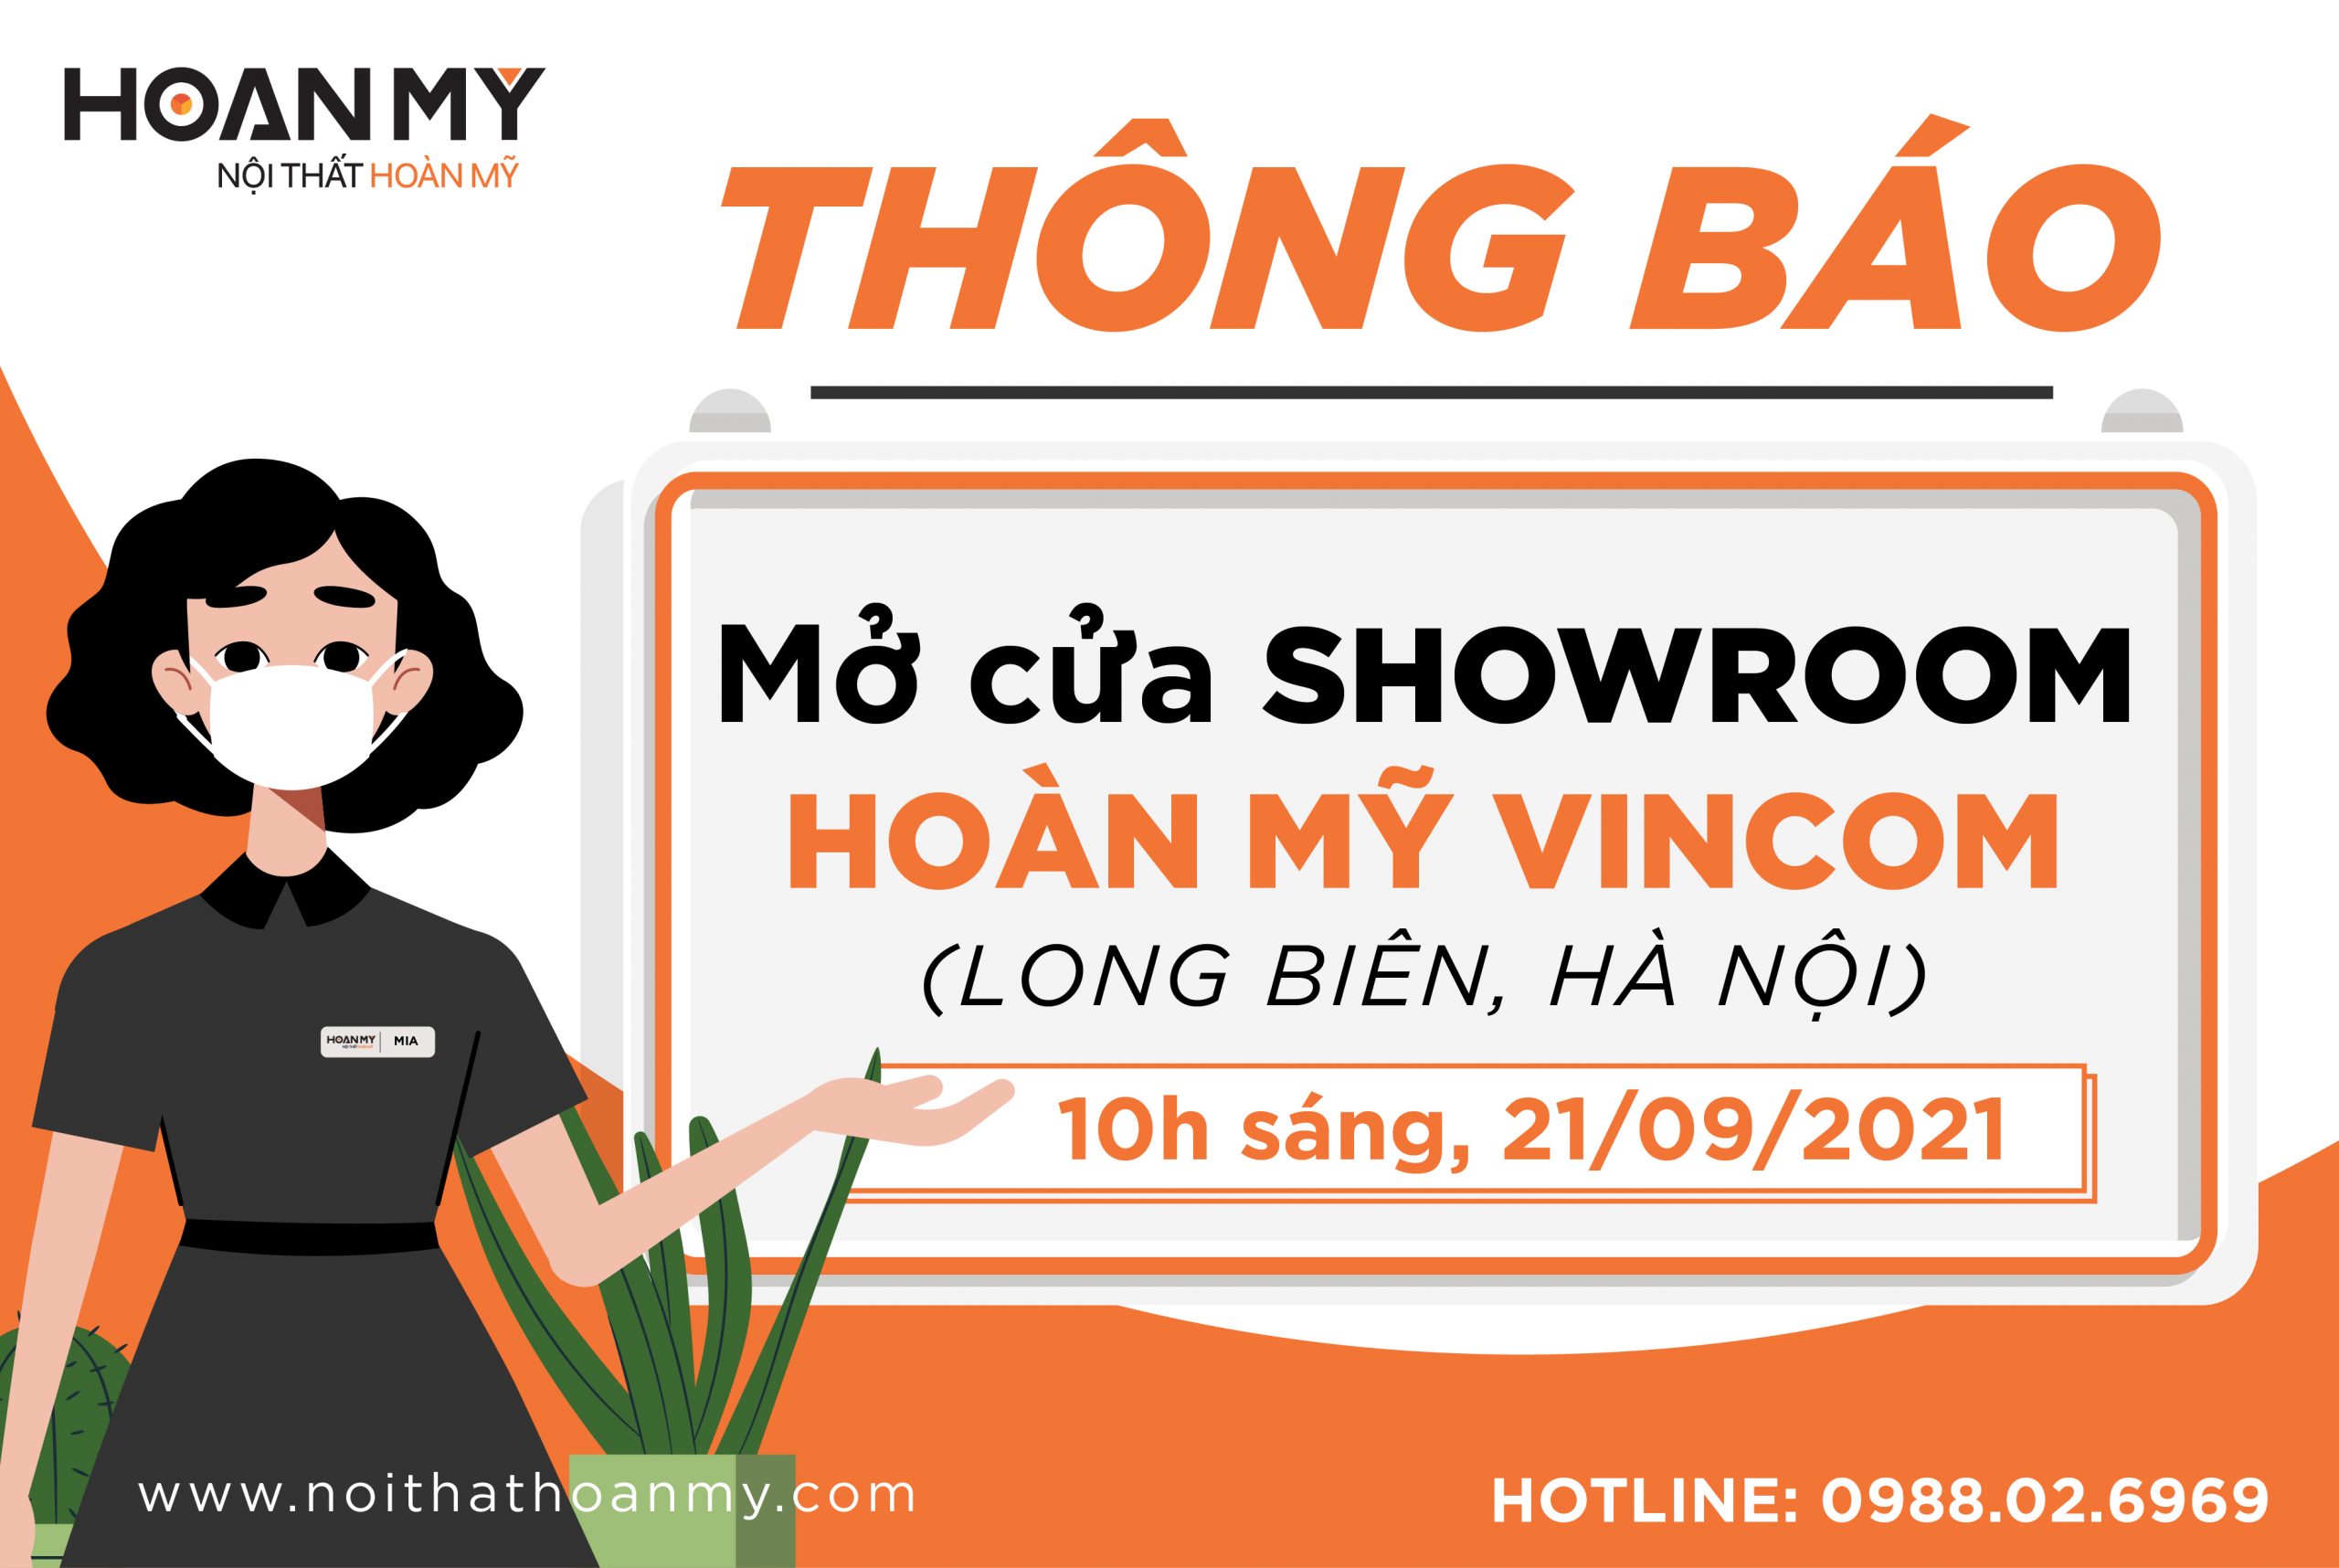 Vincom Long Biên: Chúng tôi rất tự hào được giới thiệu tới bạn Vincom Long Biên - một trong những trung tâm mua sắm lớn nhất và đẳng cấp nhất thành phố. Hơn 300 thương hiệu nước ngoài và nội địa nổi tiếng cùng với các shop thời trang đa dạng sẽ đáp ứng nhu cầu của mọi khách hàng.